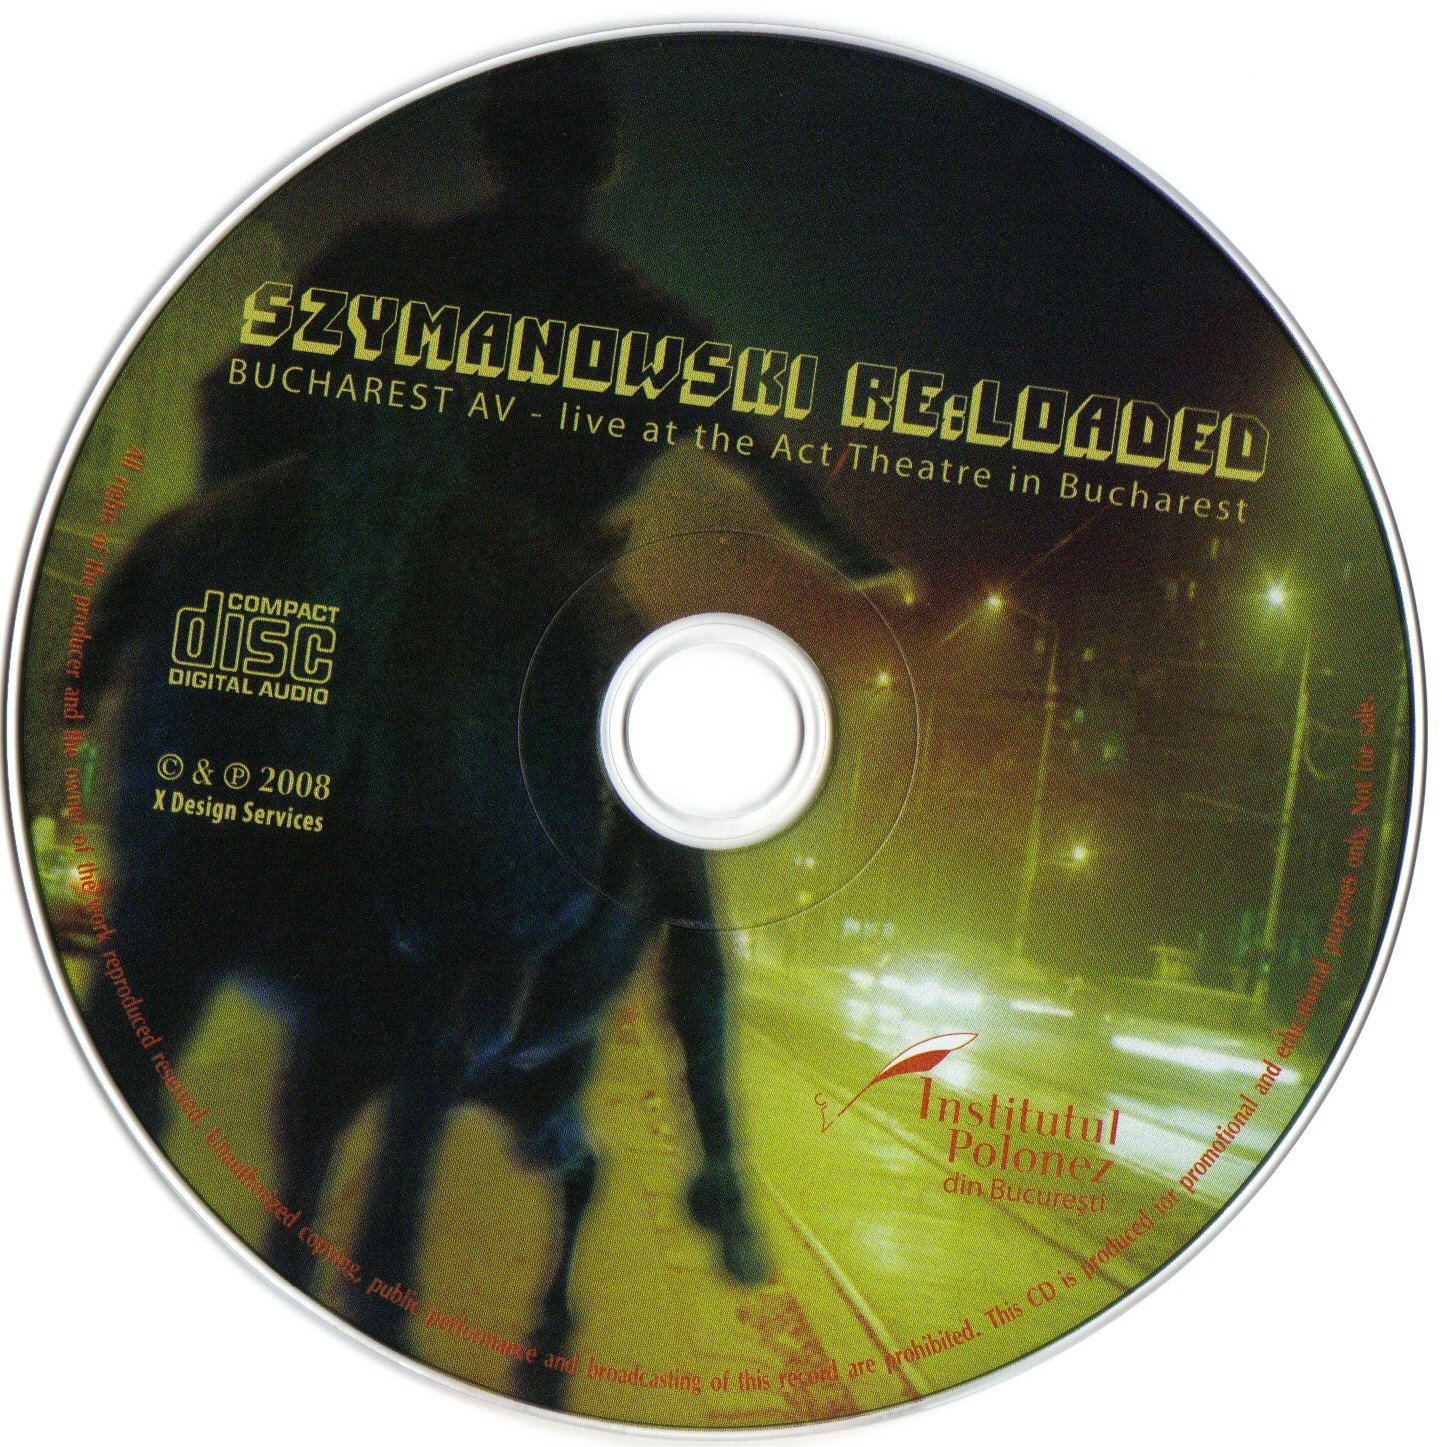 [Szymanowski+Re.Loaded+CD.jpg]